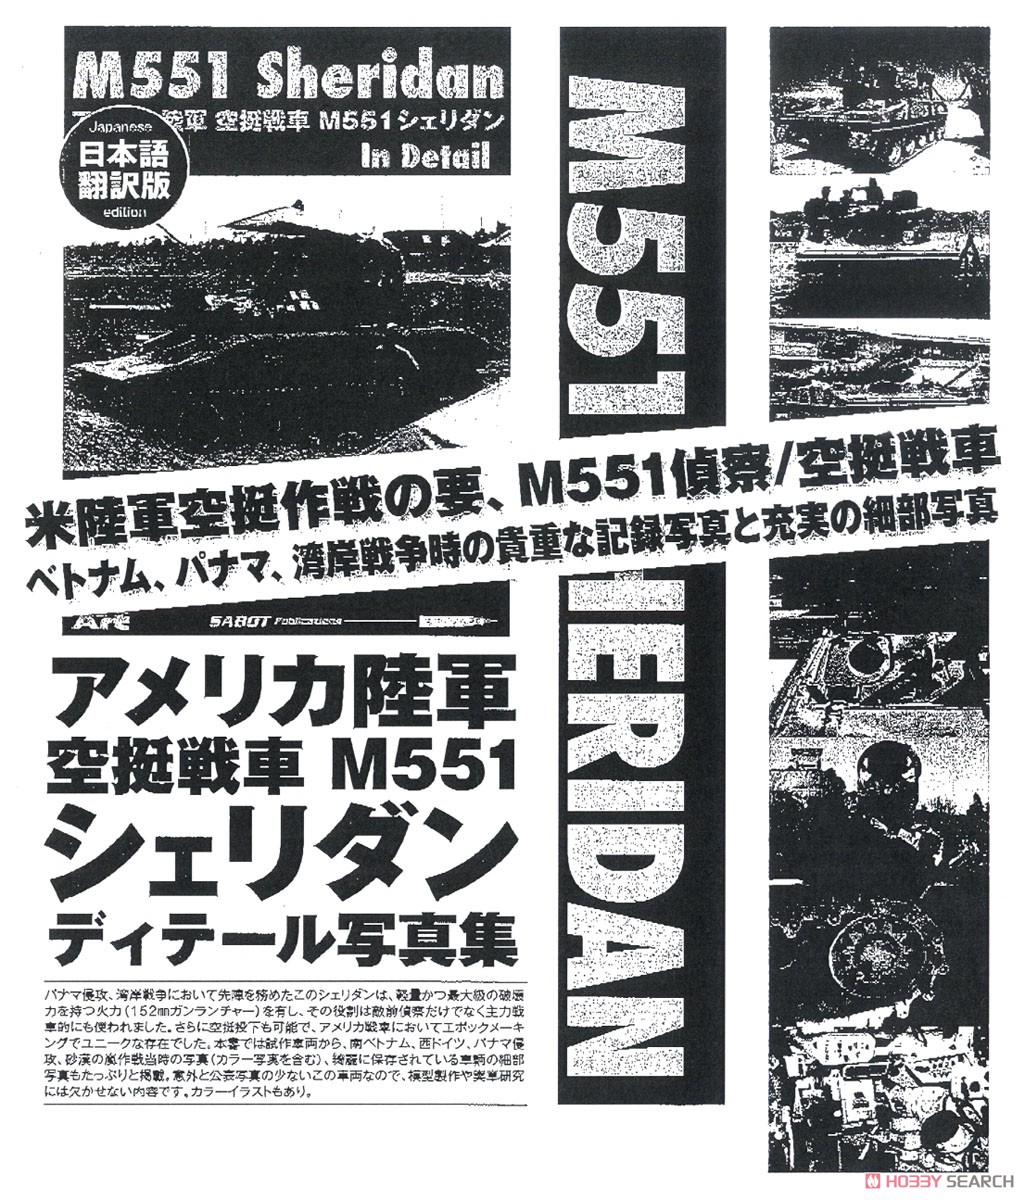 アメリカ陸軍 空挺戦車 M551 シェリダン インディテール (SABOT Publications 日本語版) (書籍) その他の画像1